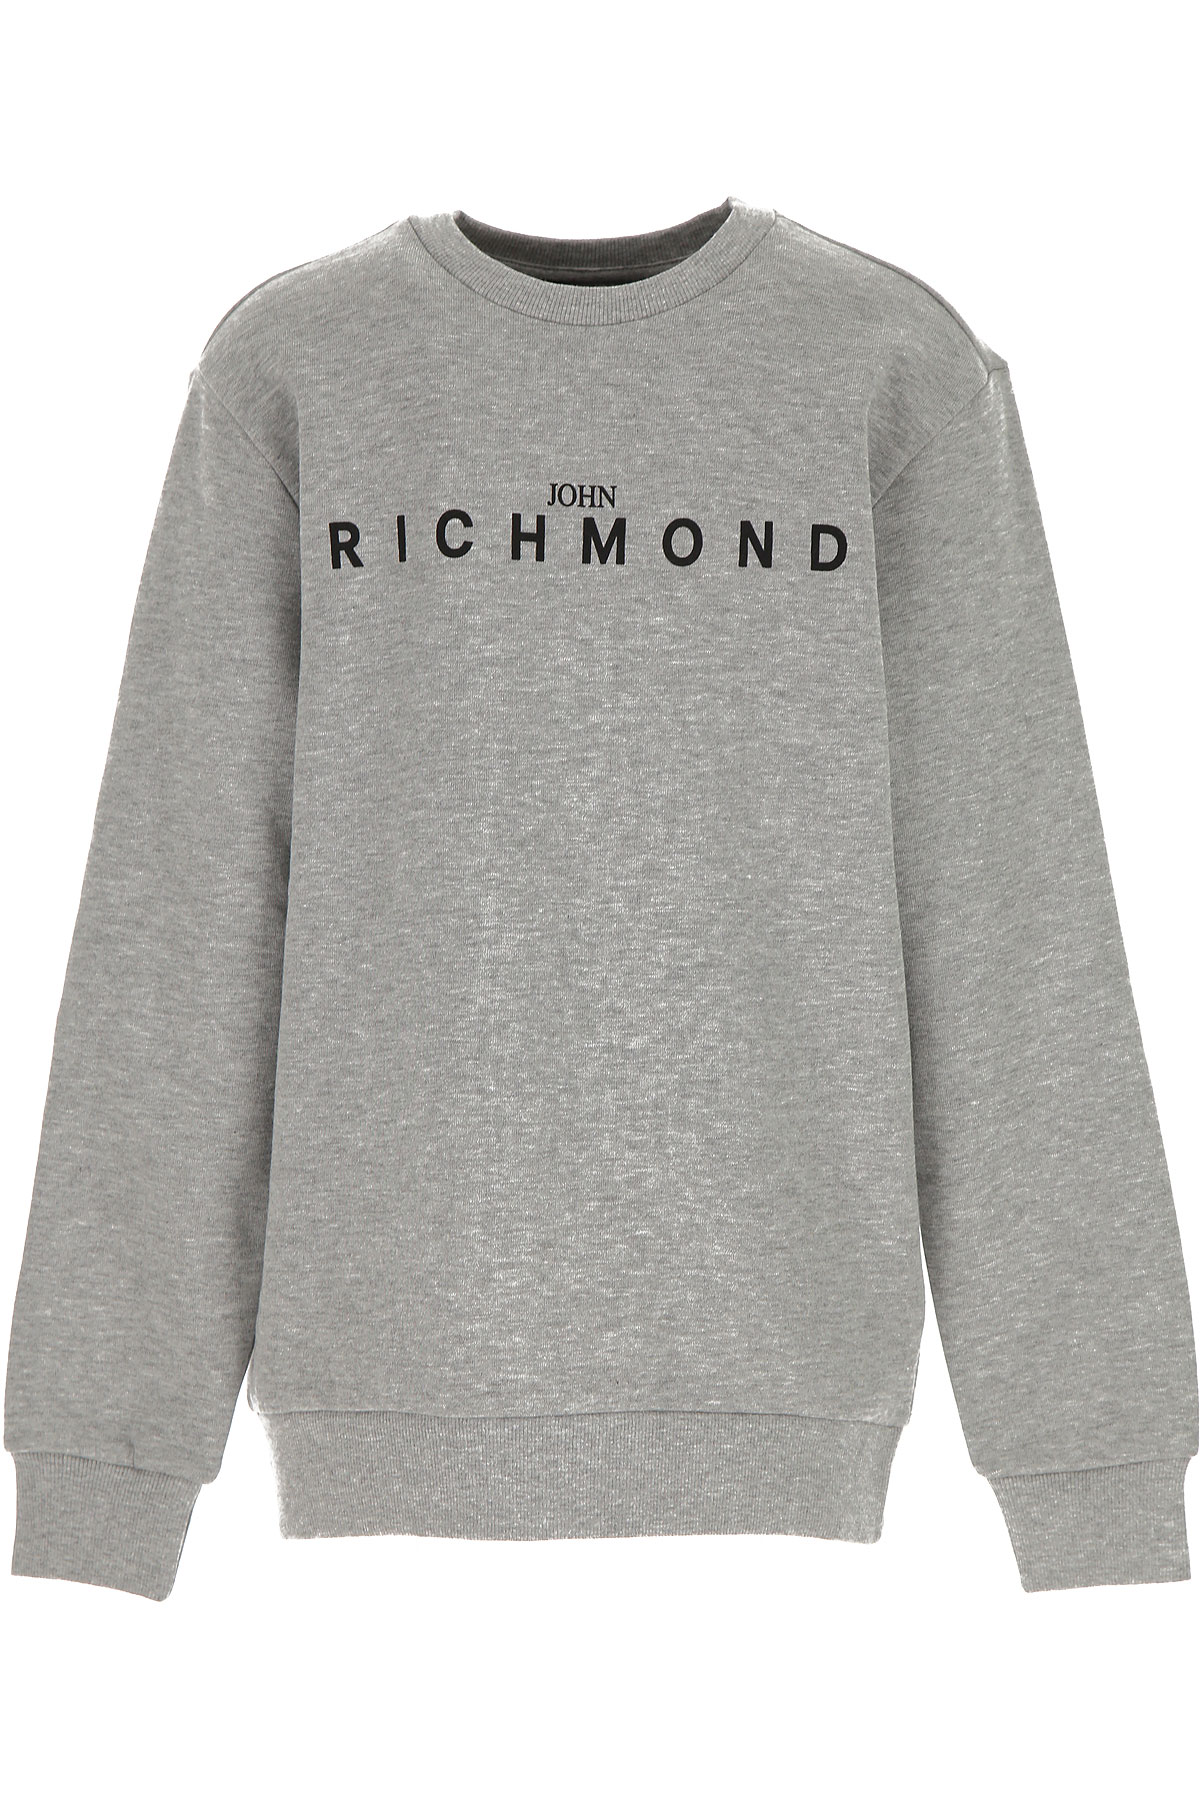 Richmond Kinder Sweatshirt & Kapuzenpullover für Jungen Günstig im Sale, Grau, Baumwolle, 2017, 12Y 4Y 6Y 8Y